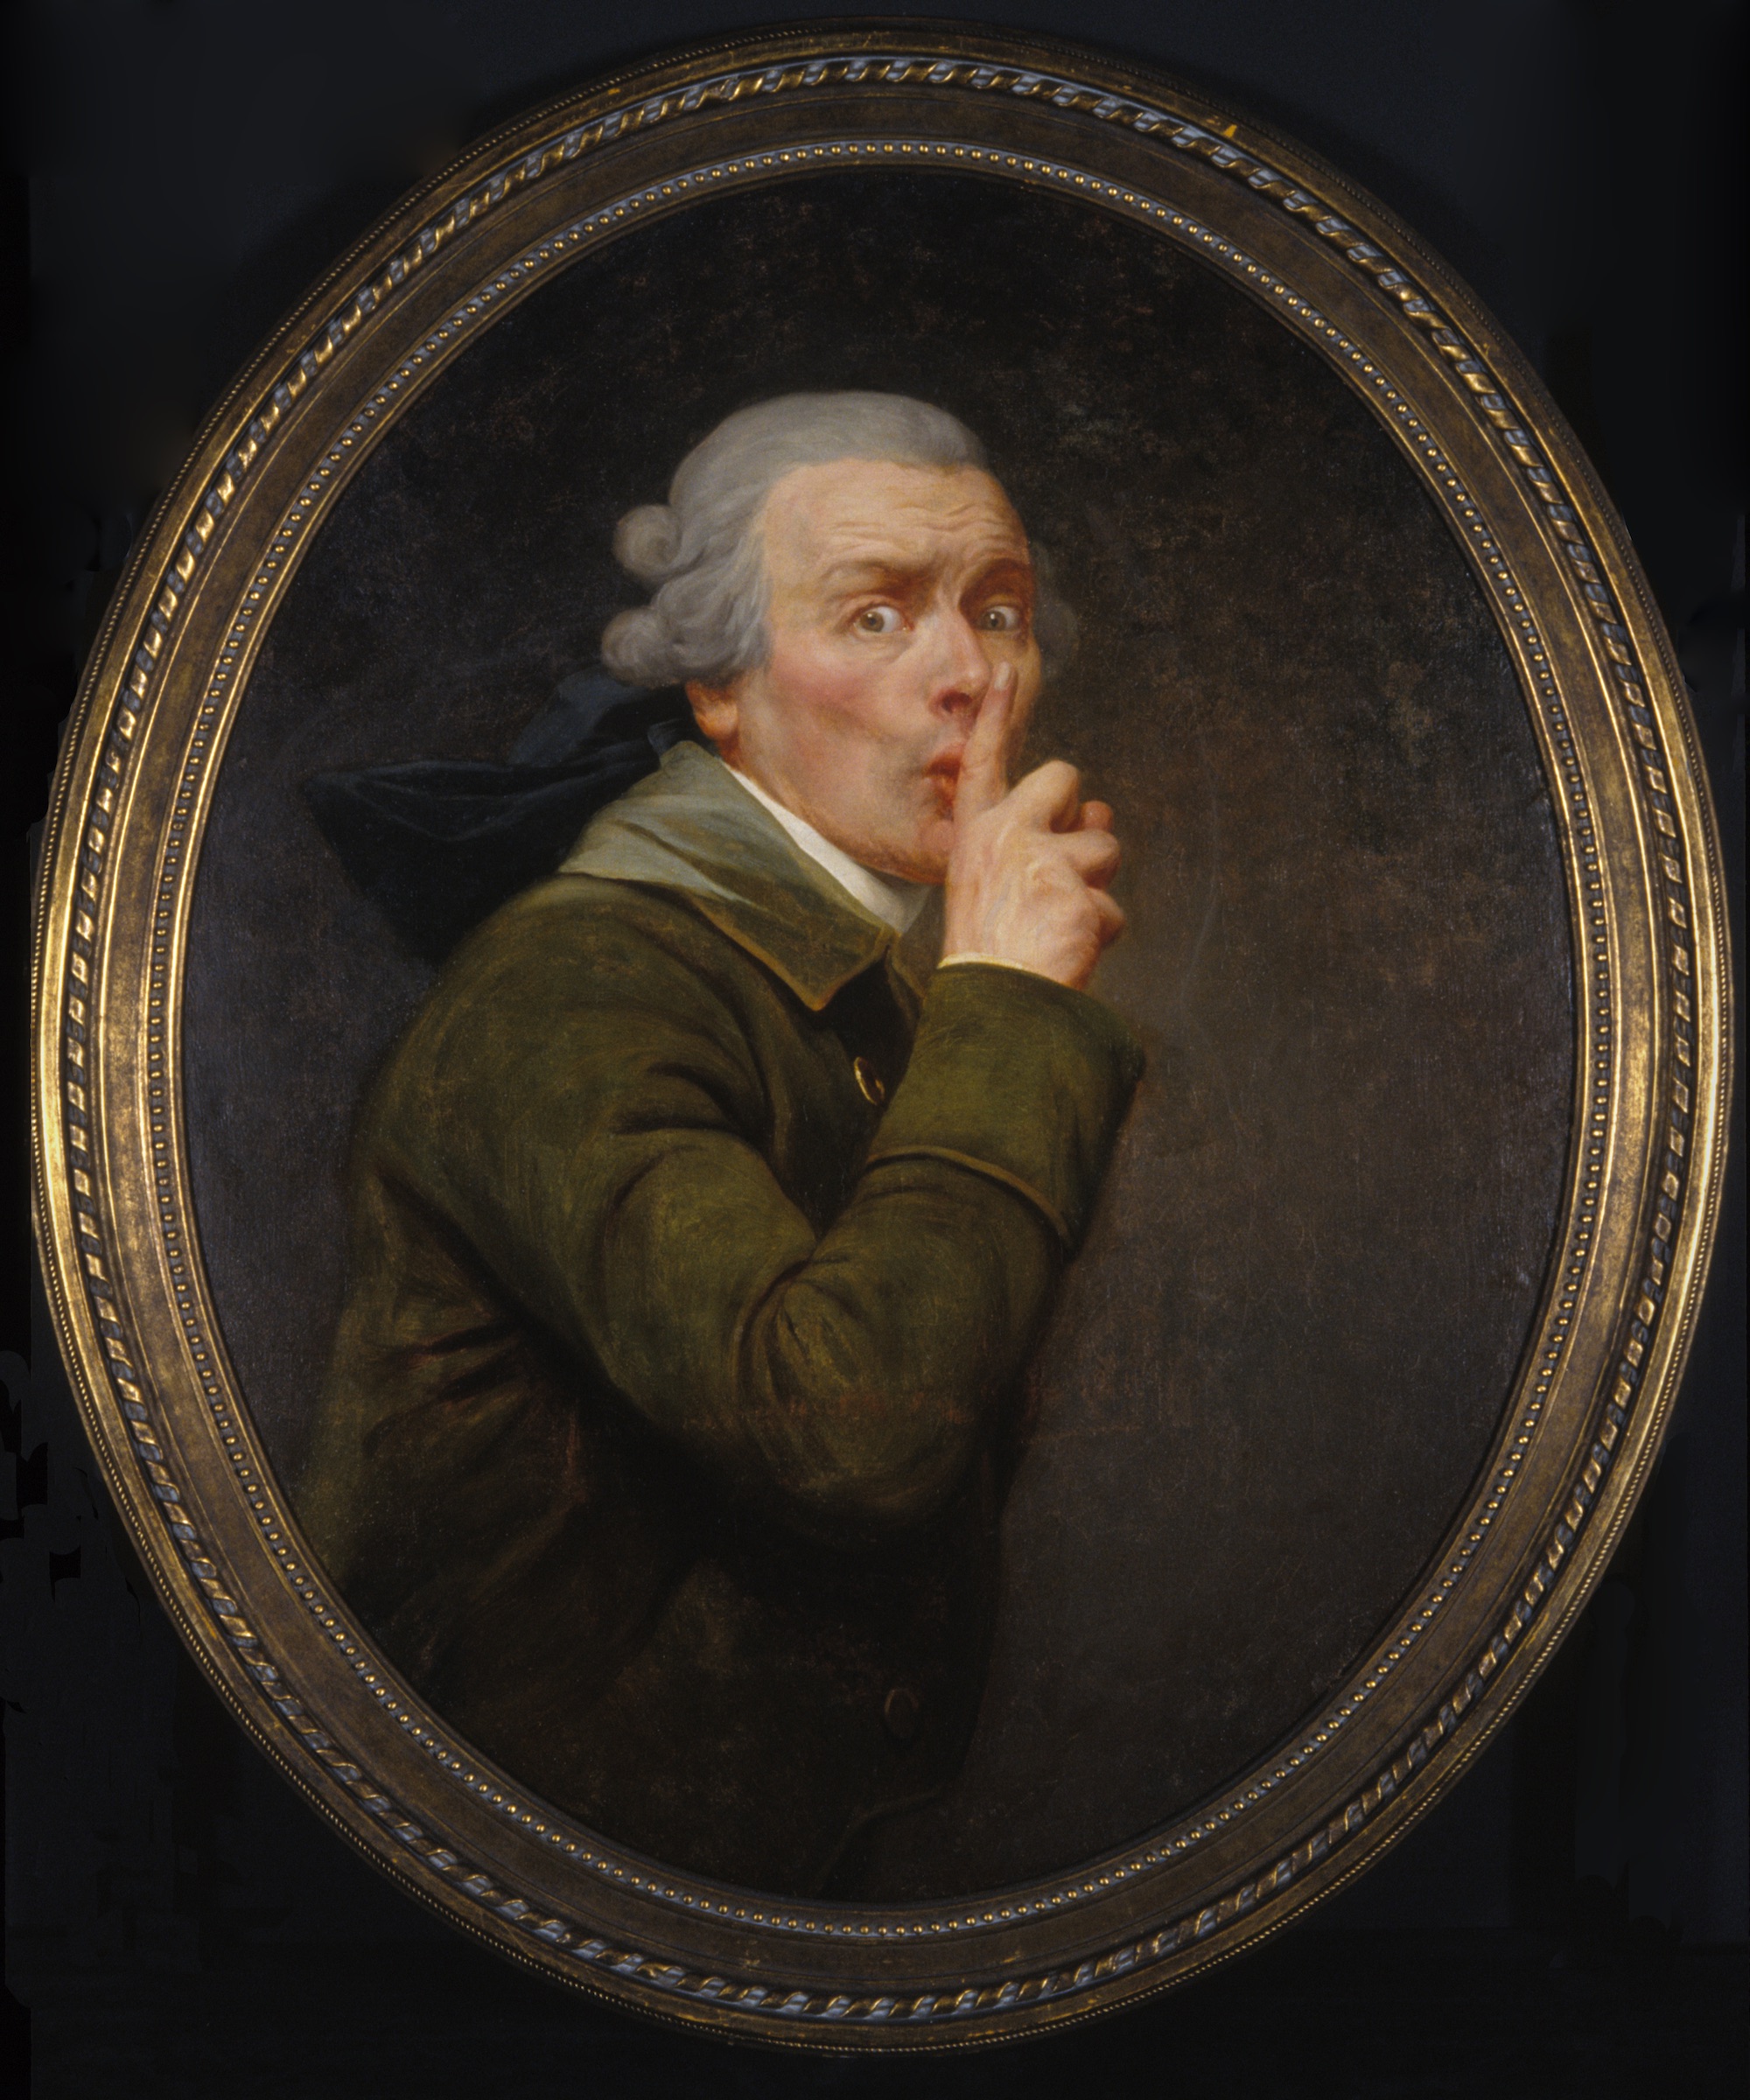 Il discreto by Joseph Ducreux - circa 1791 - 91.6 x 79.9 cm 